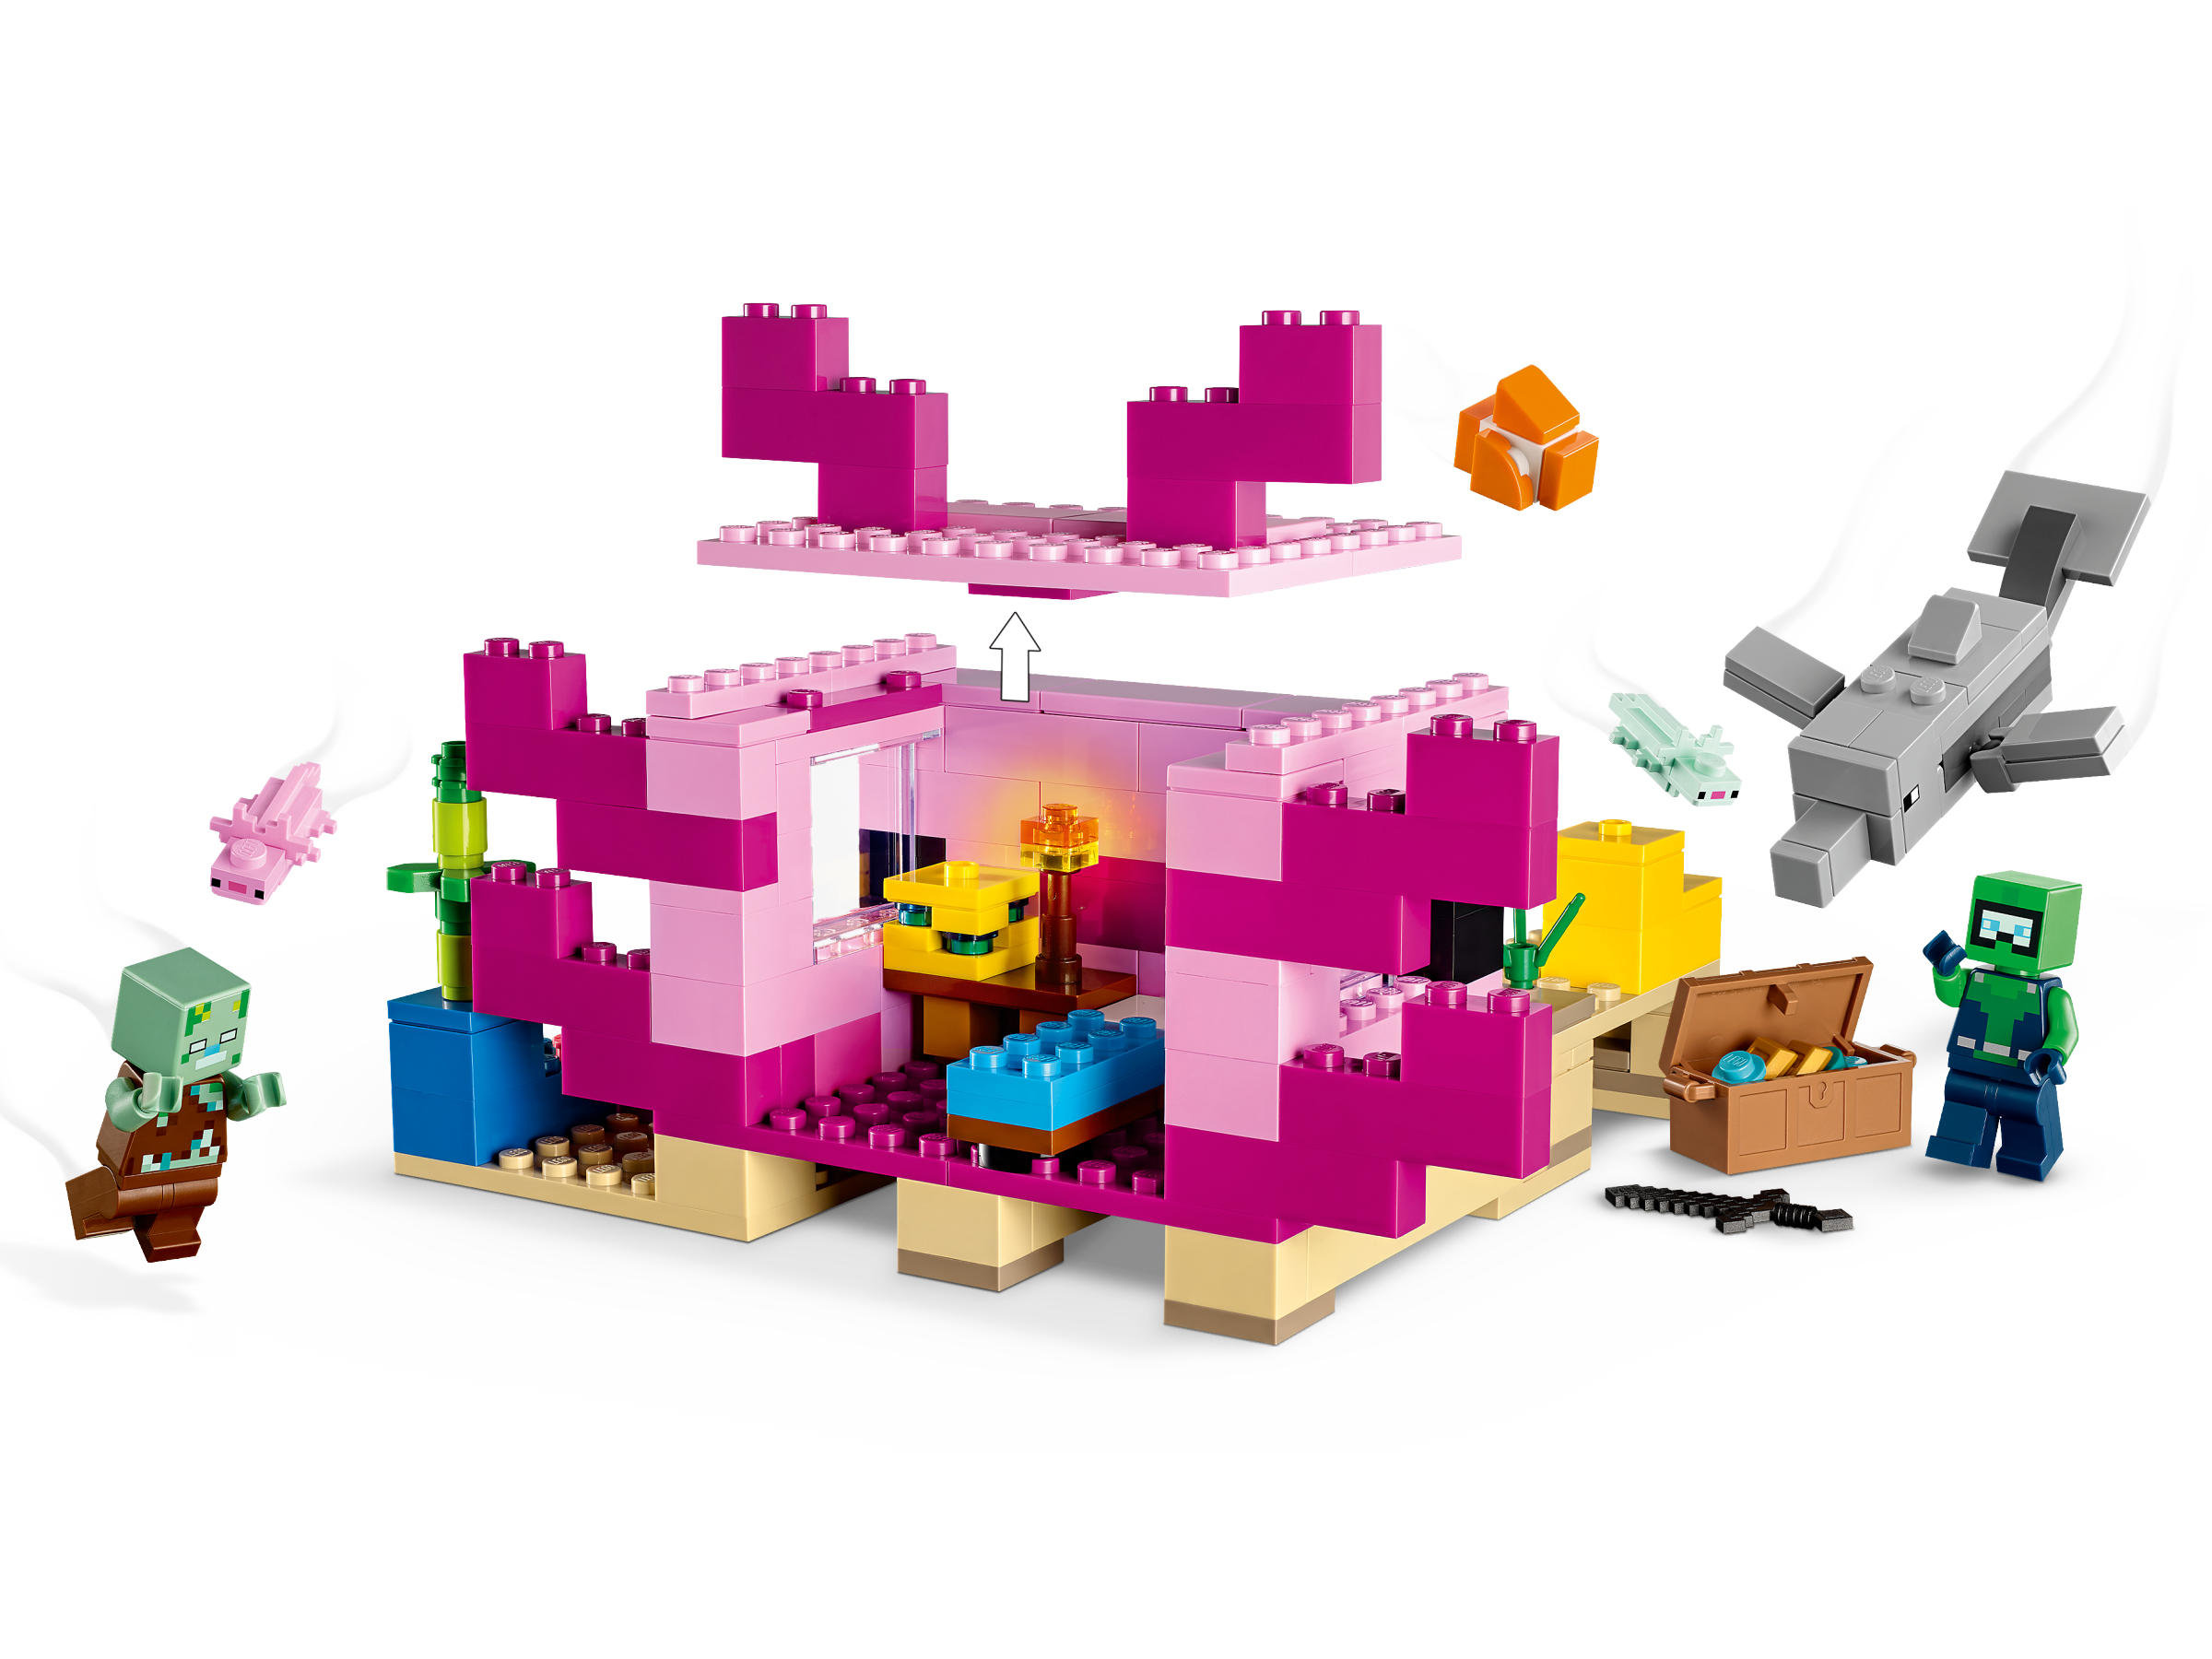 LEGO® Minecraft® 21247 A Casa de Axolotl